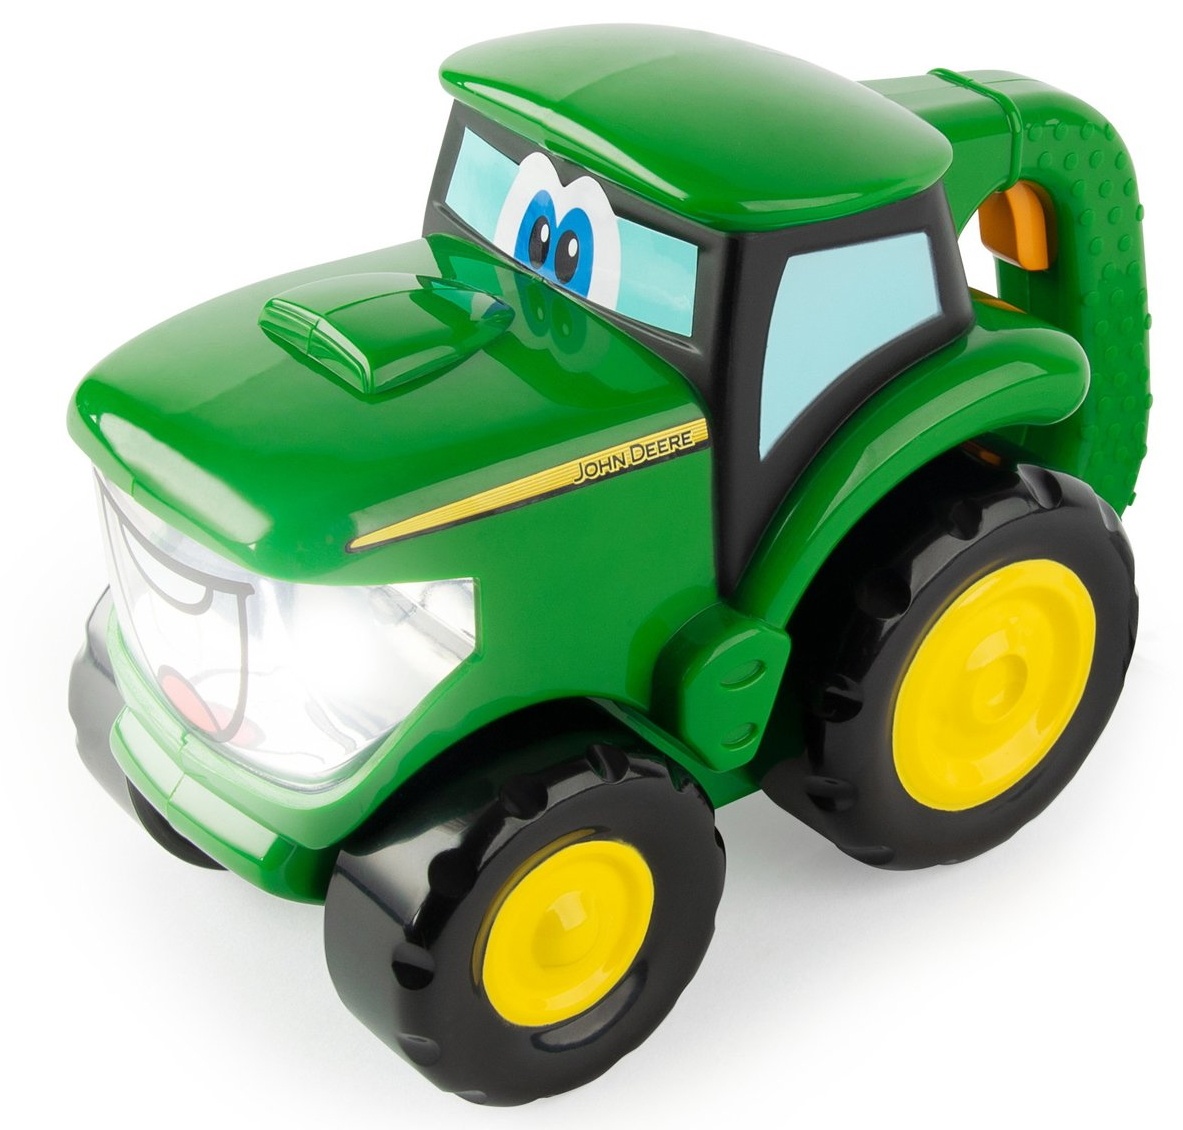 Tractor Tomy John Deere (47216)